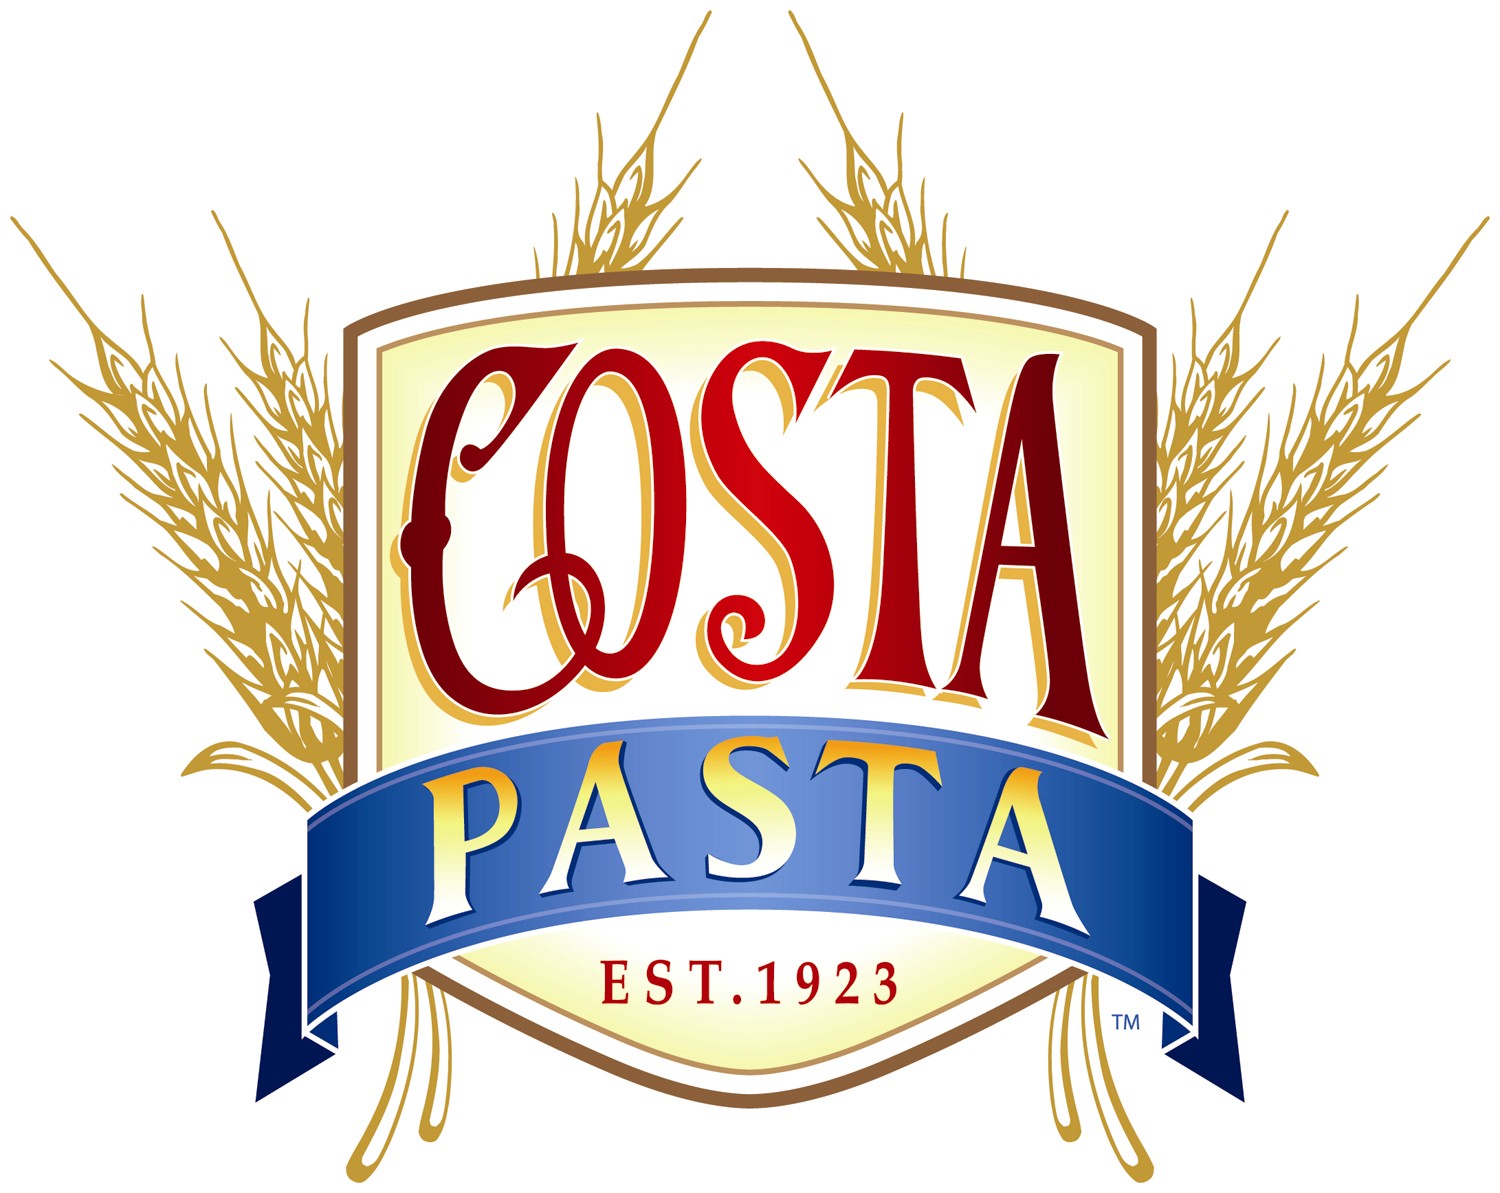 Costa Pasta